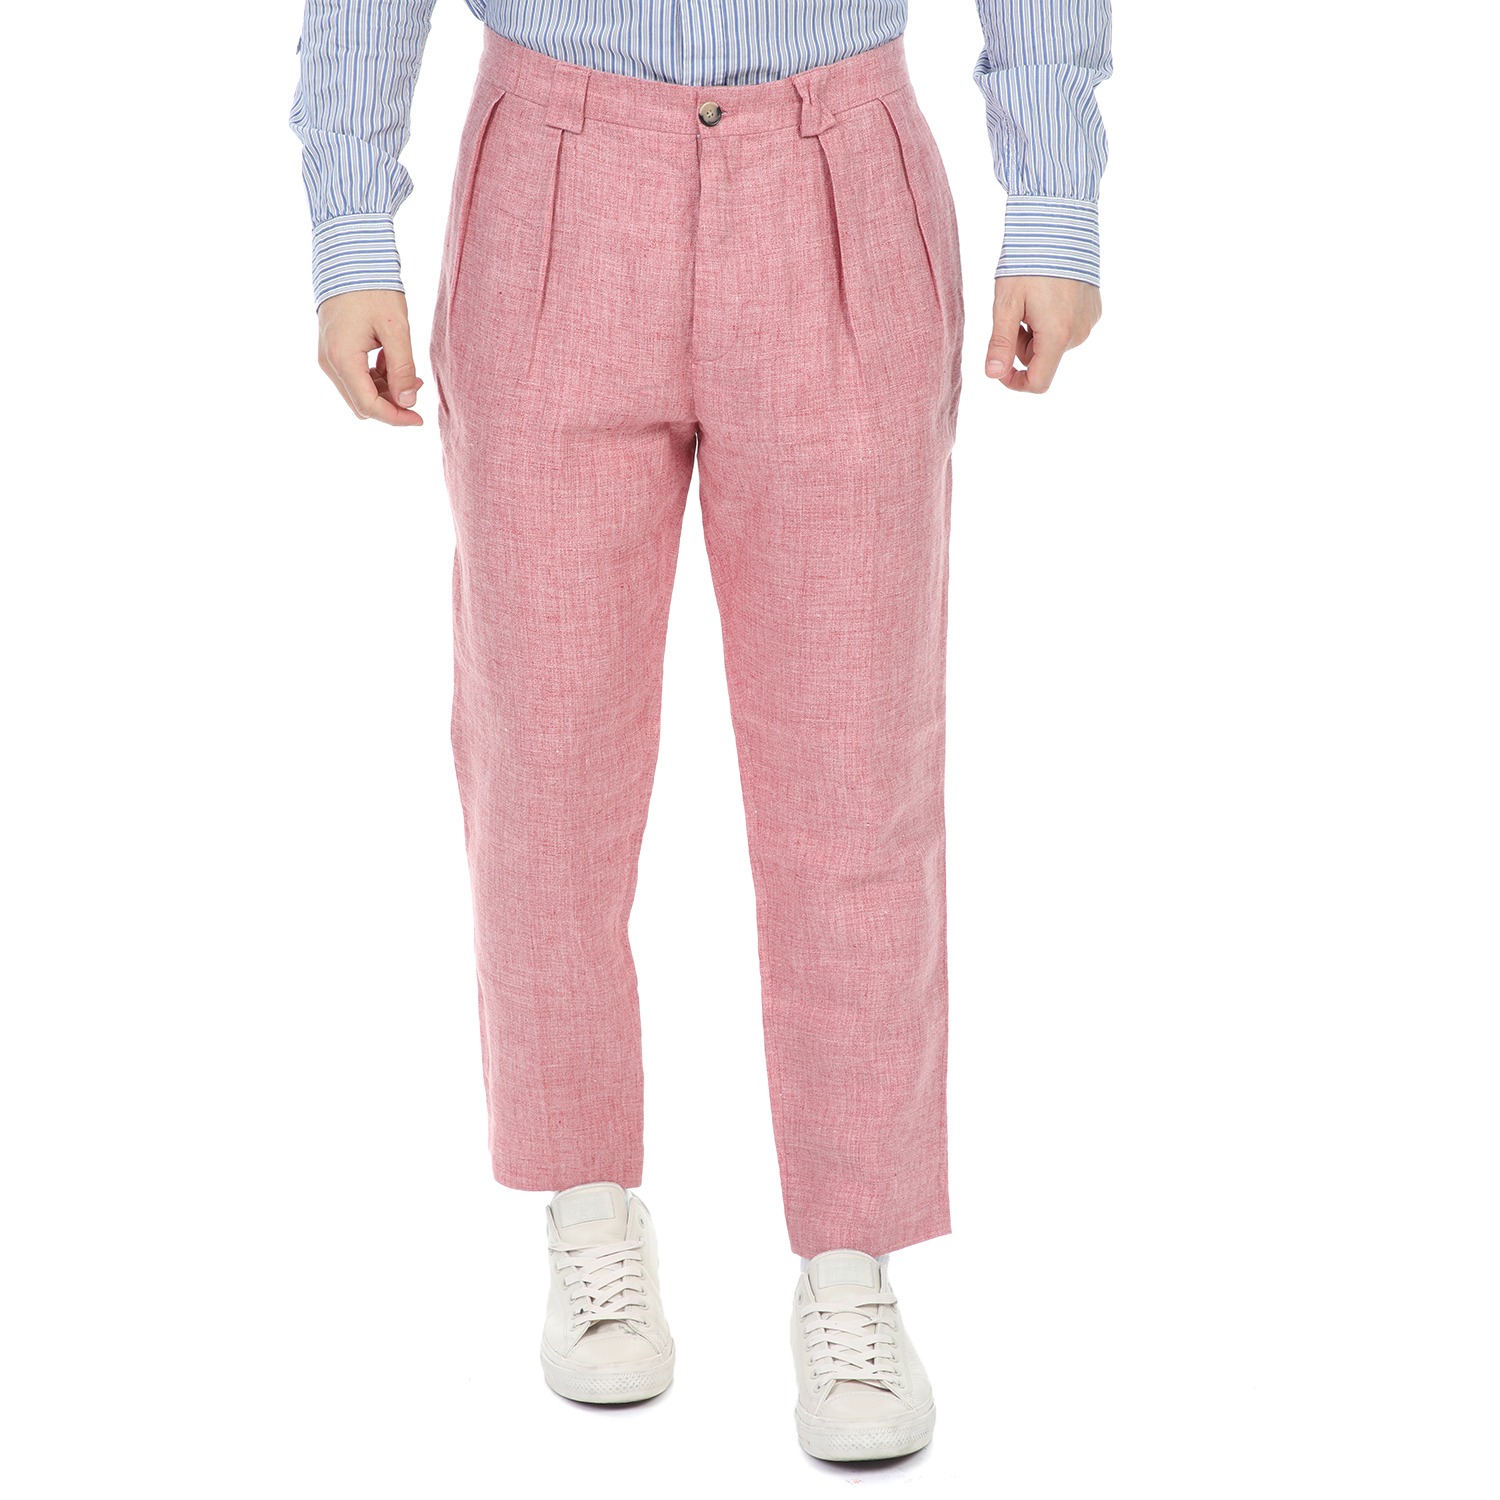 SCOTCH & SODA SCOTCH & SODA - Ανδρικό λινό παντελόνι SCOTCH & SODA Owen - Summer wide fit pant ροζ